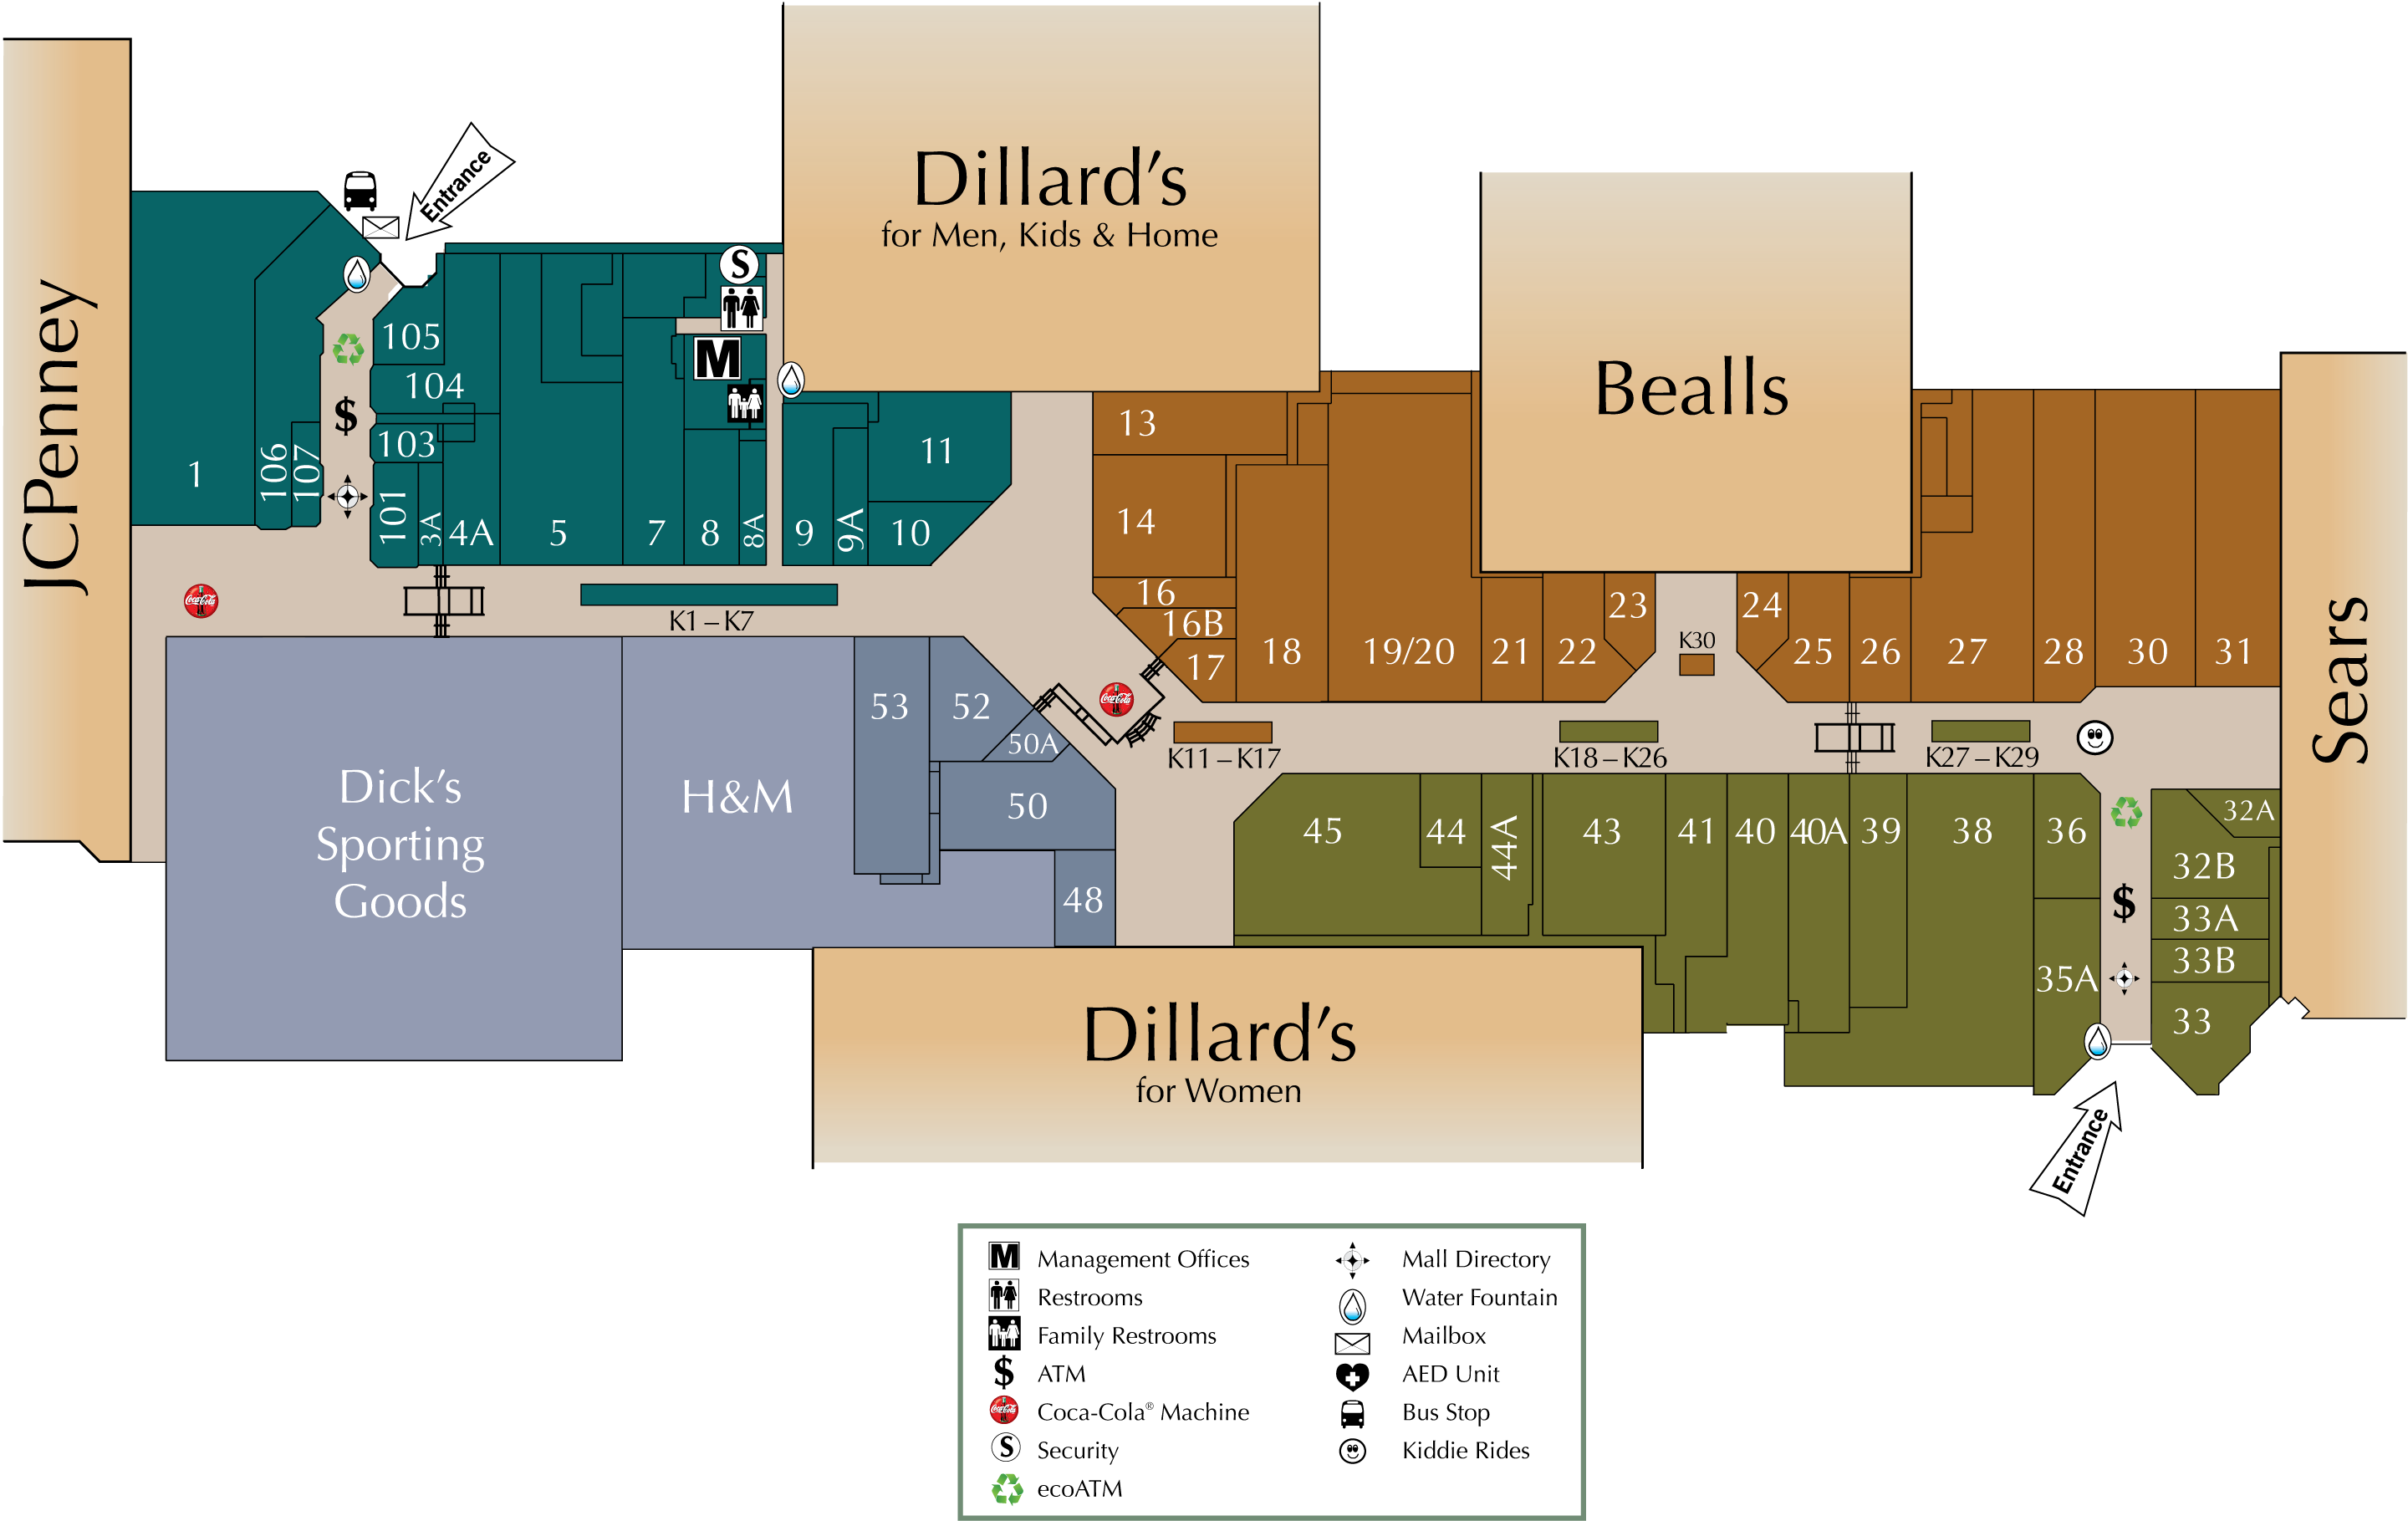 Mall Directory | Richland Mall